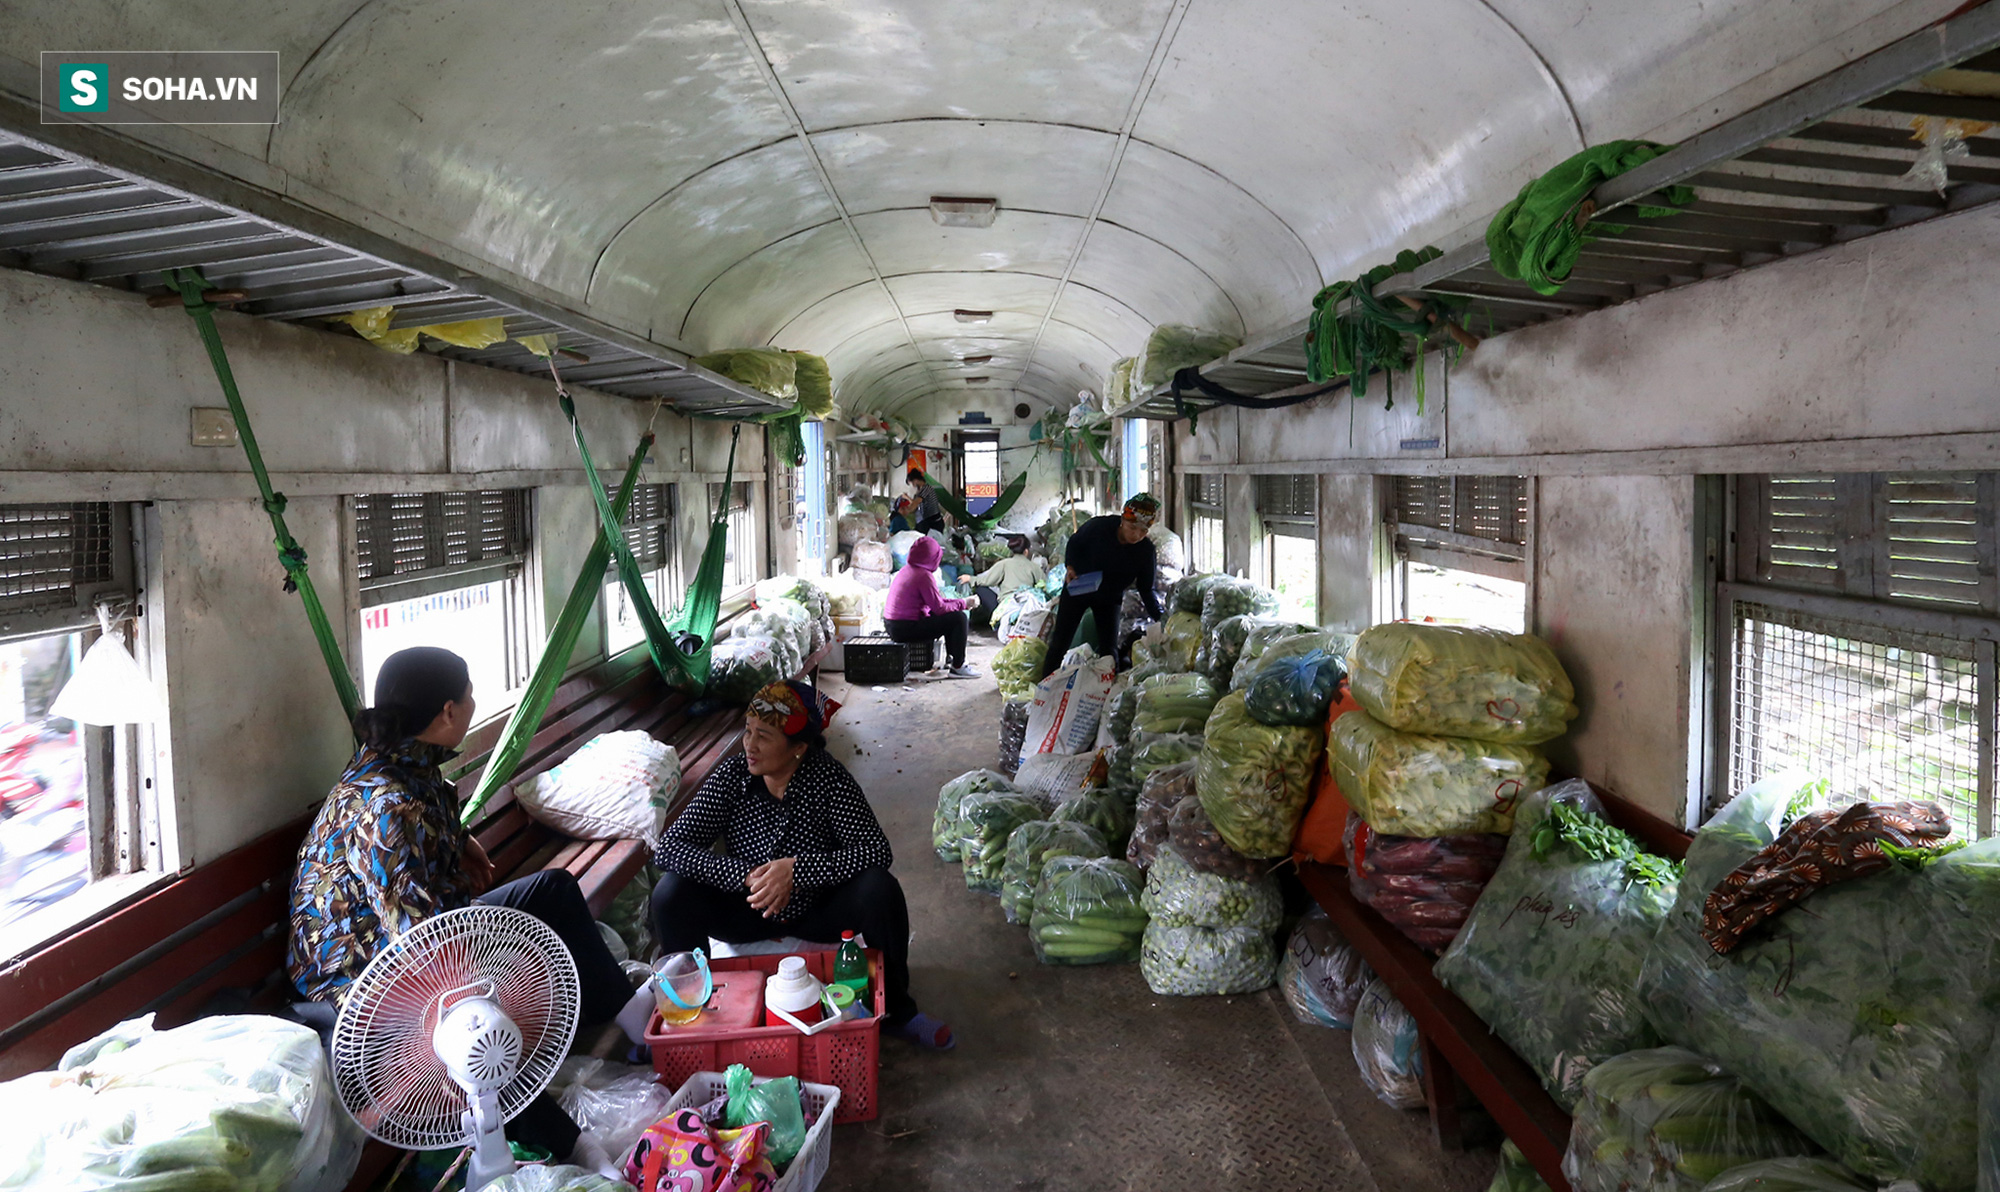 [ẢNH] Hình ảnh đối lập của các toa tàu đường sắt Việt Nam đang sử dụng - có cả hạng sang đến hạng cũ khó tin - Ảnh 4.